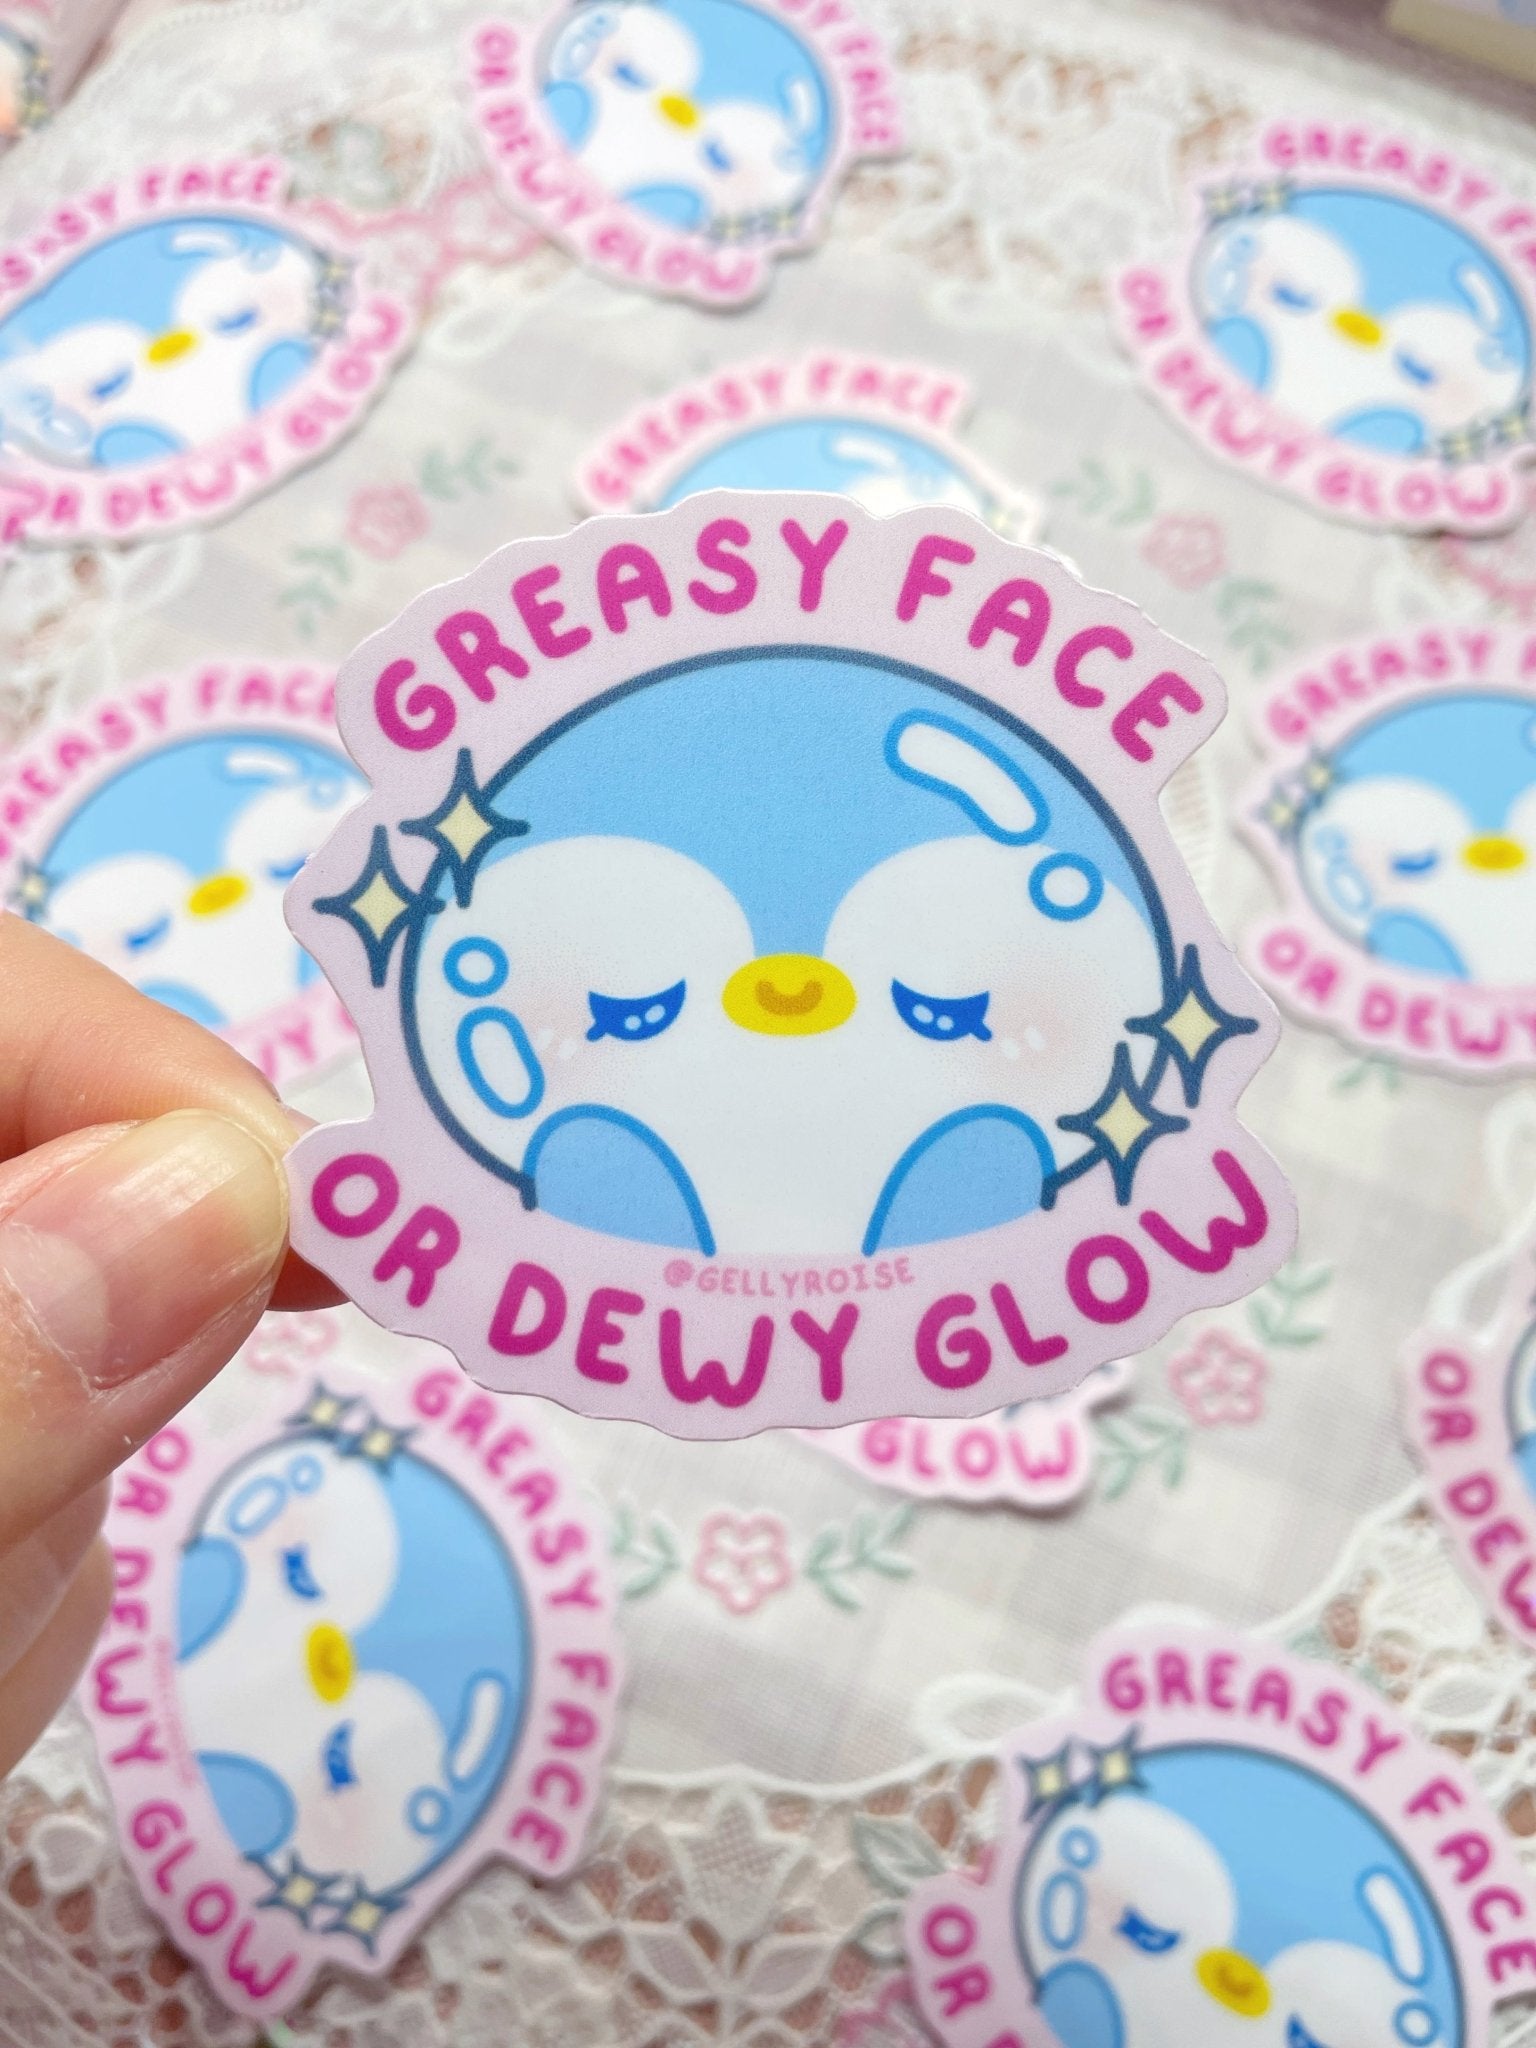 NEW Greasy Face or Dewy Glow Waterproof Sticker - Gelly Roise